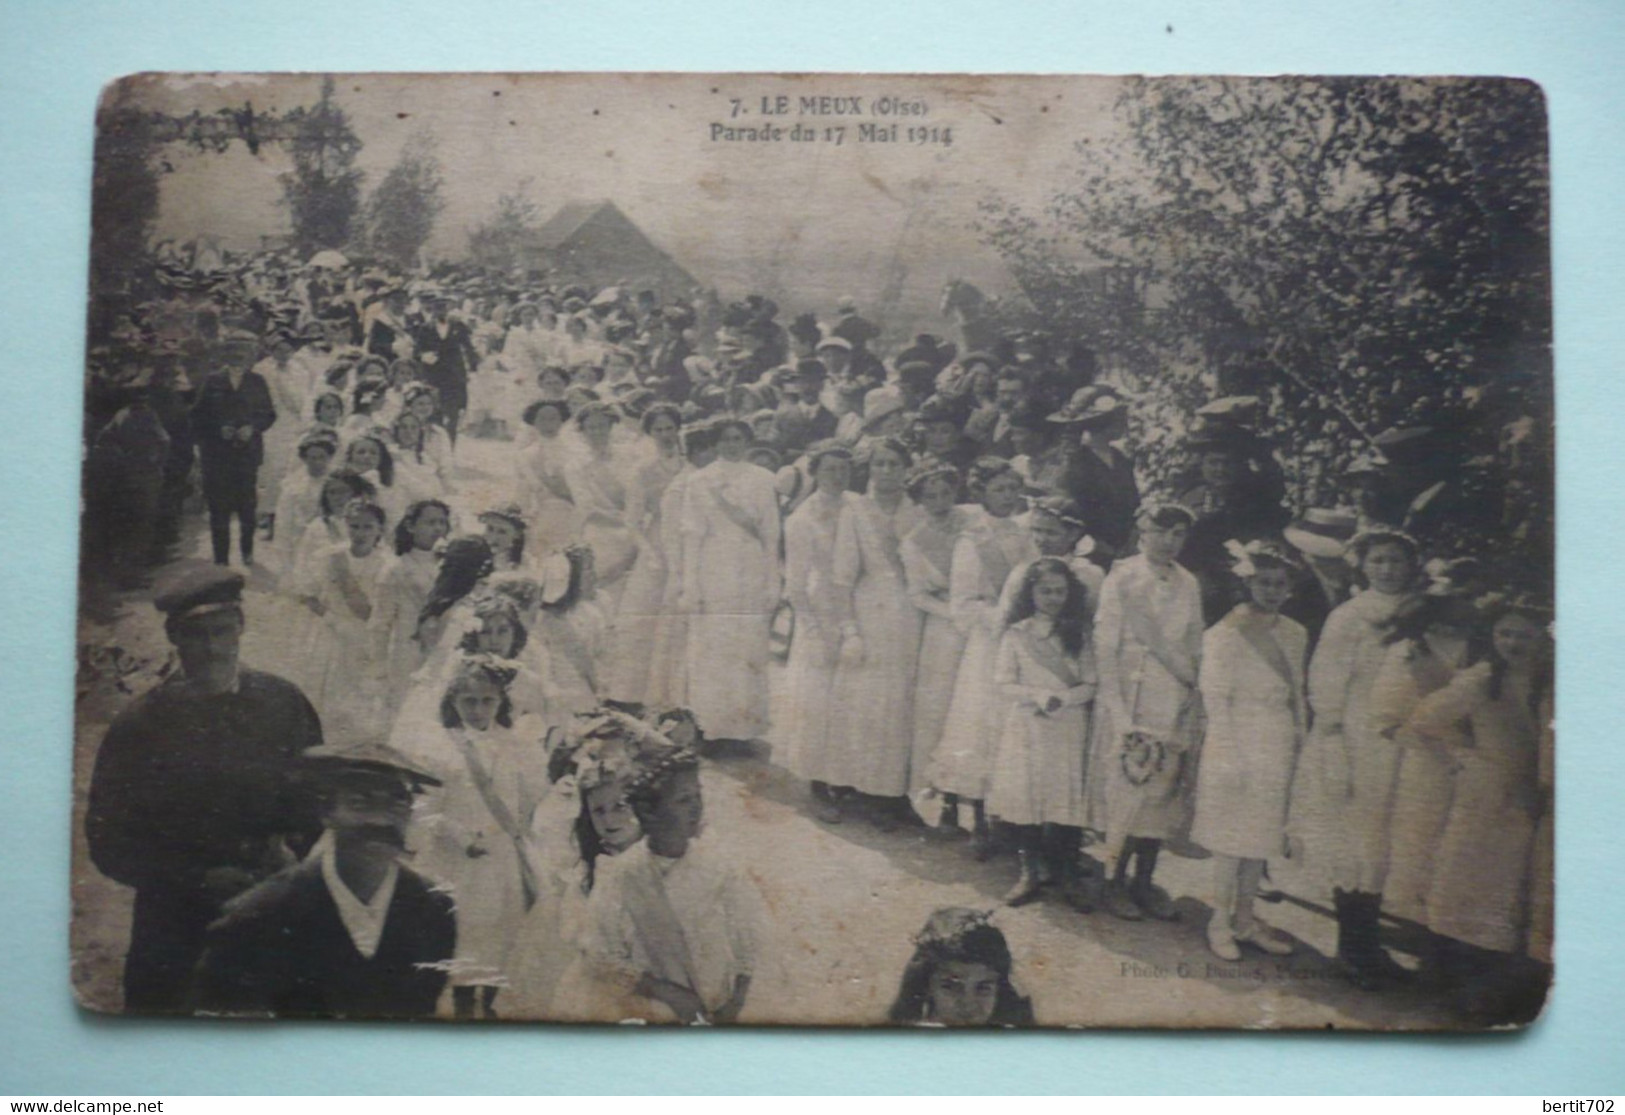 60 - LE MEUX - PARADE DU 17 MAI 1914 - Bouquet Provincial - Tir à L'arc  - Groupe De Jeunes Filles Tout De Blanc Vêtues - Tiro Al Arco